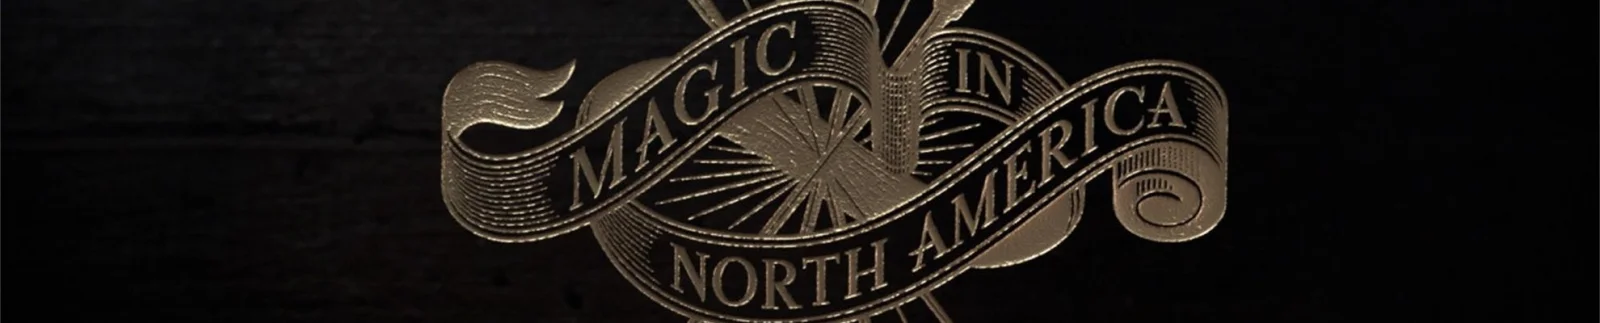 J.K. 罗琳新书《北美魔法历史》公开预告